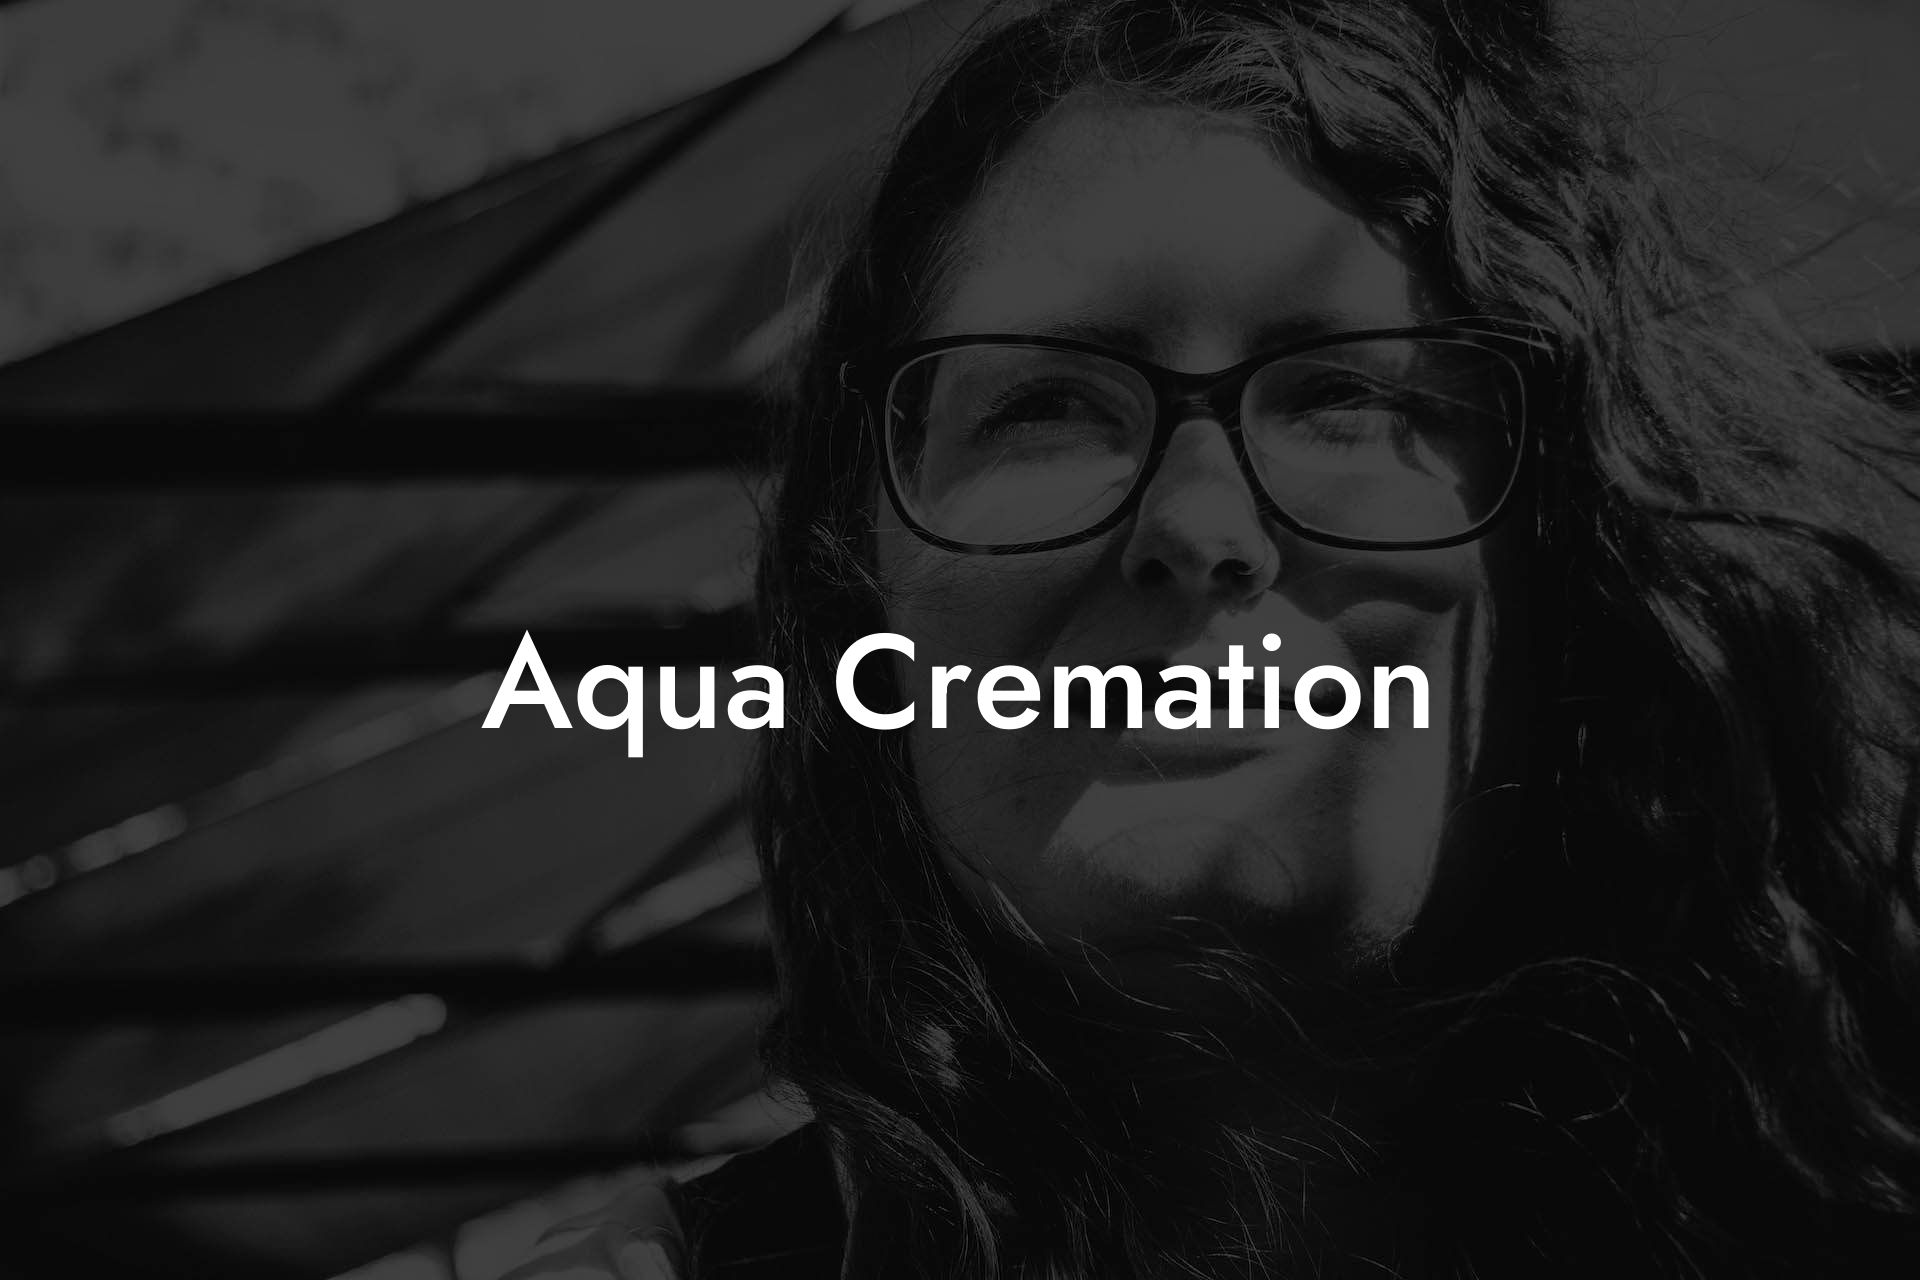 Aqua Cremation